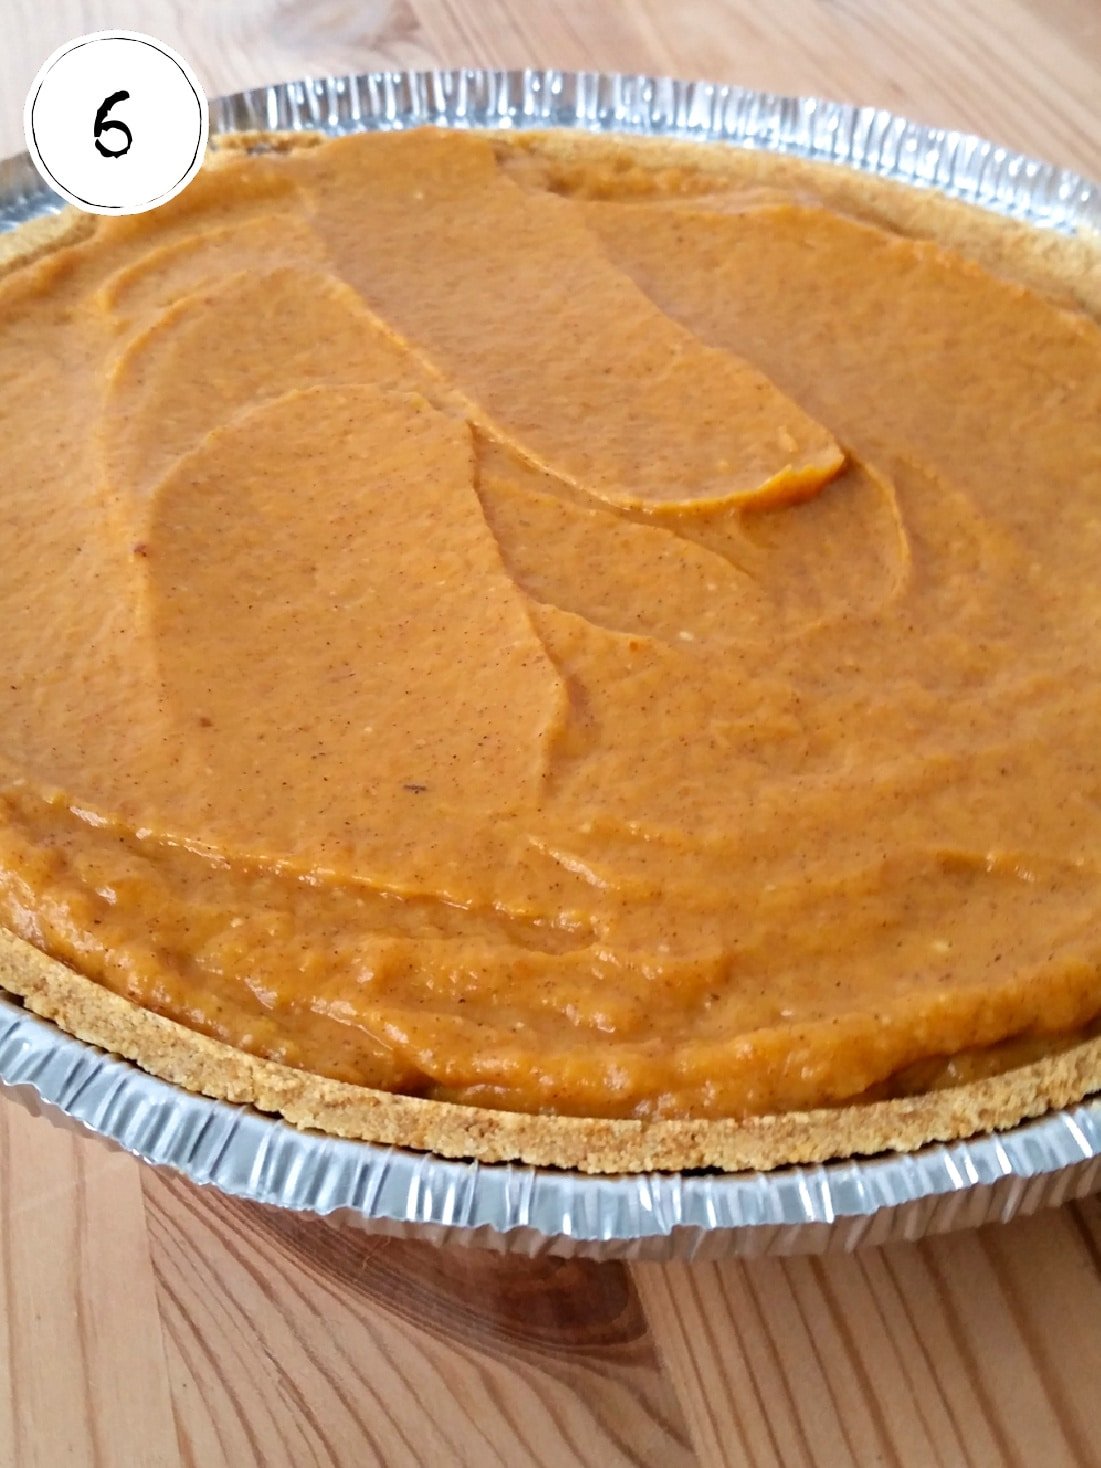 Adding pumpkin layer to no bake pumpkin pie.